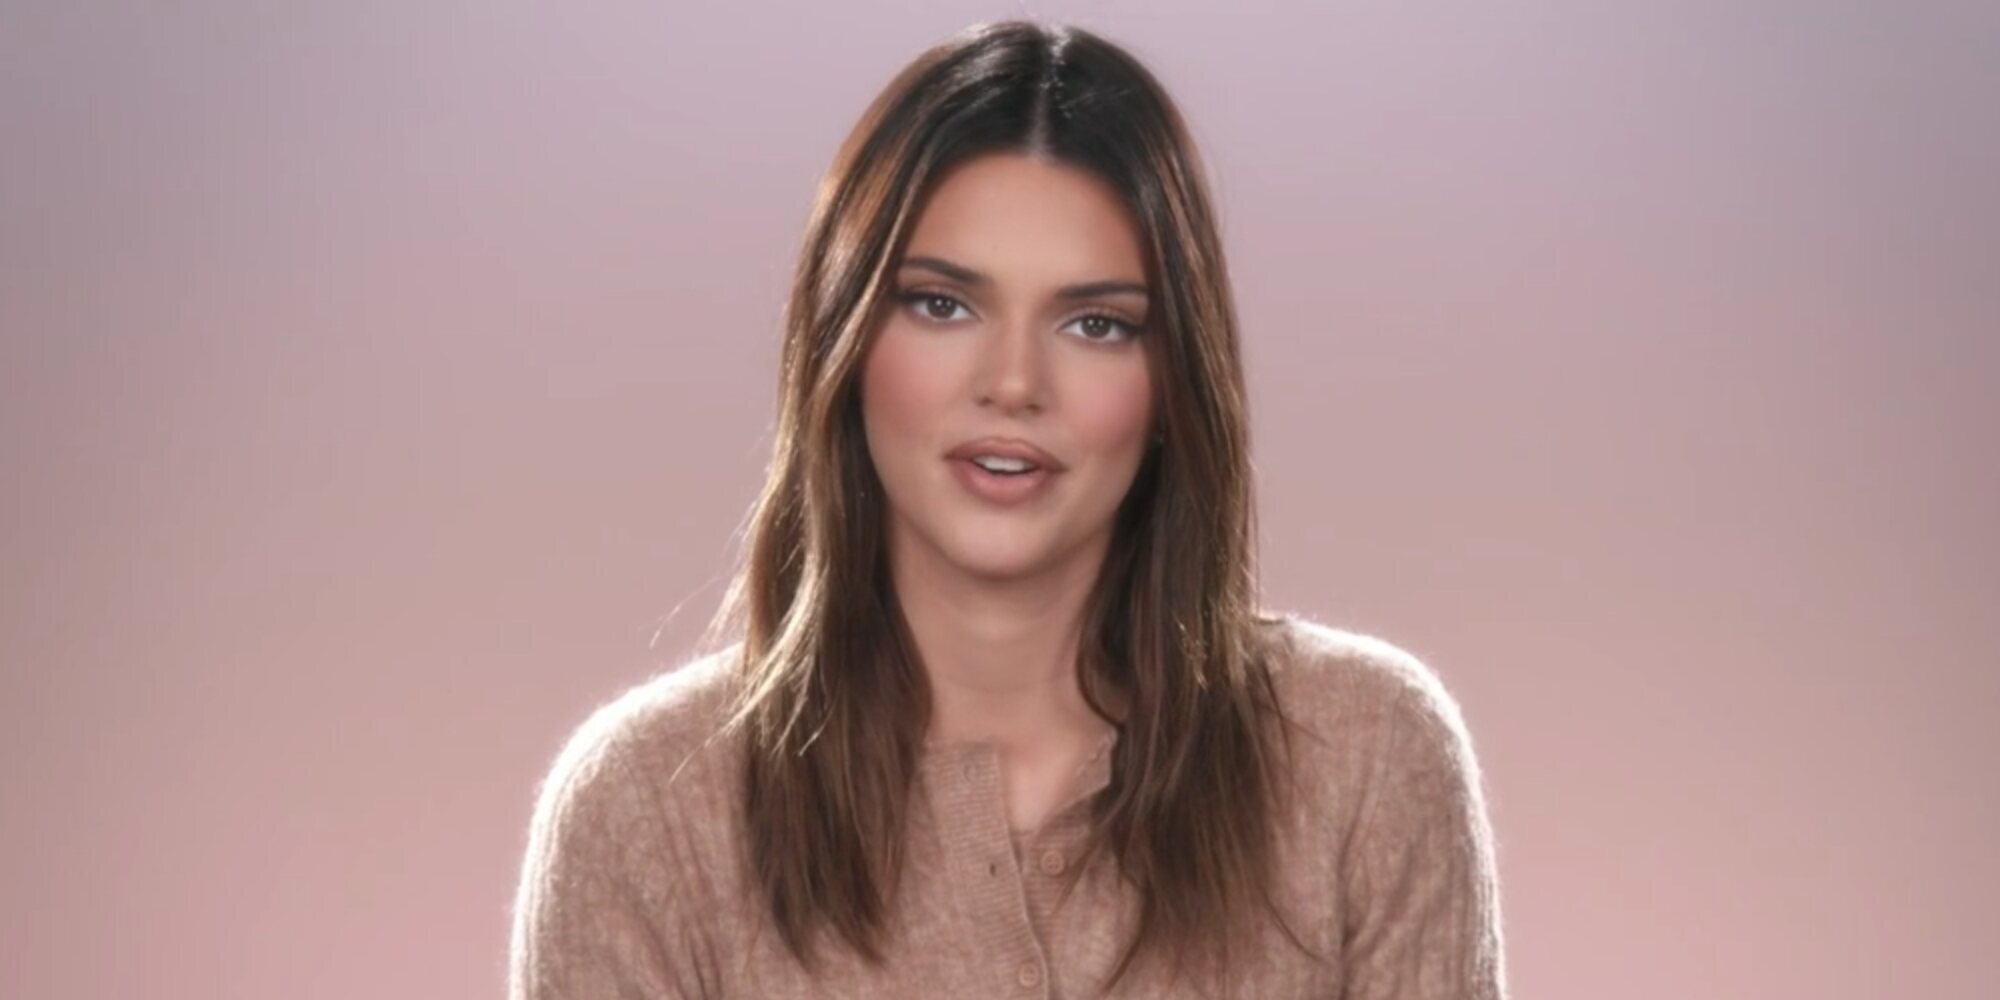 La regla que Kendall Jenner puso para que ninguno de sus novios saliese en 'Keeping Up With The Kardashians'